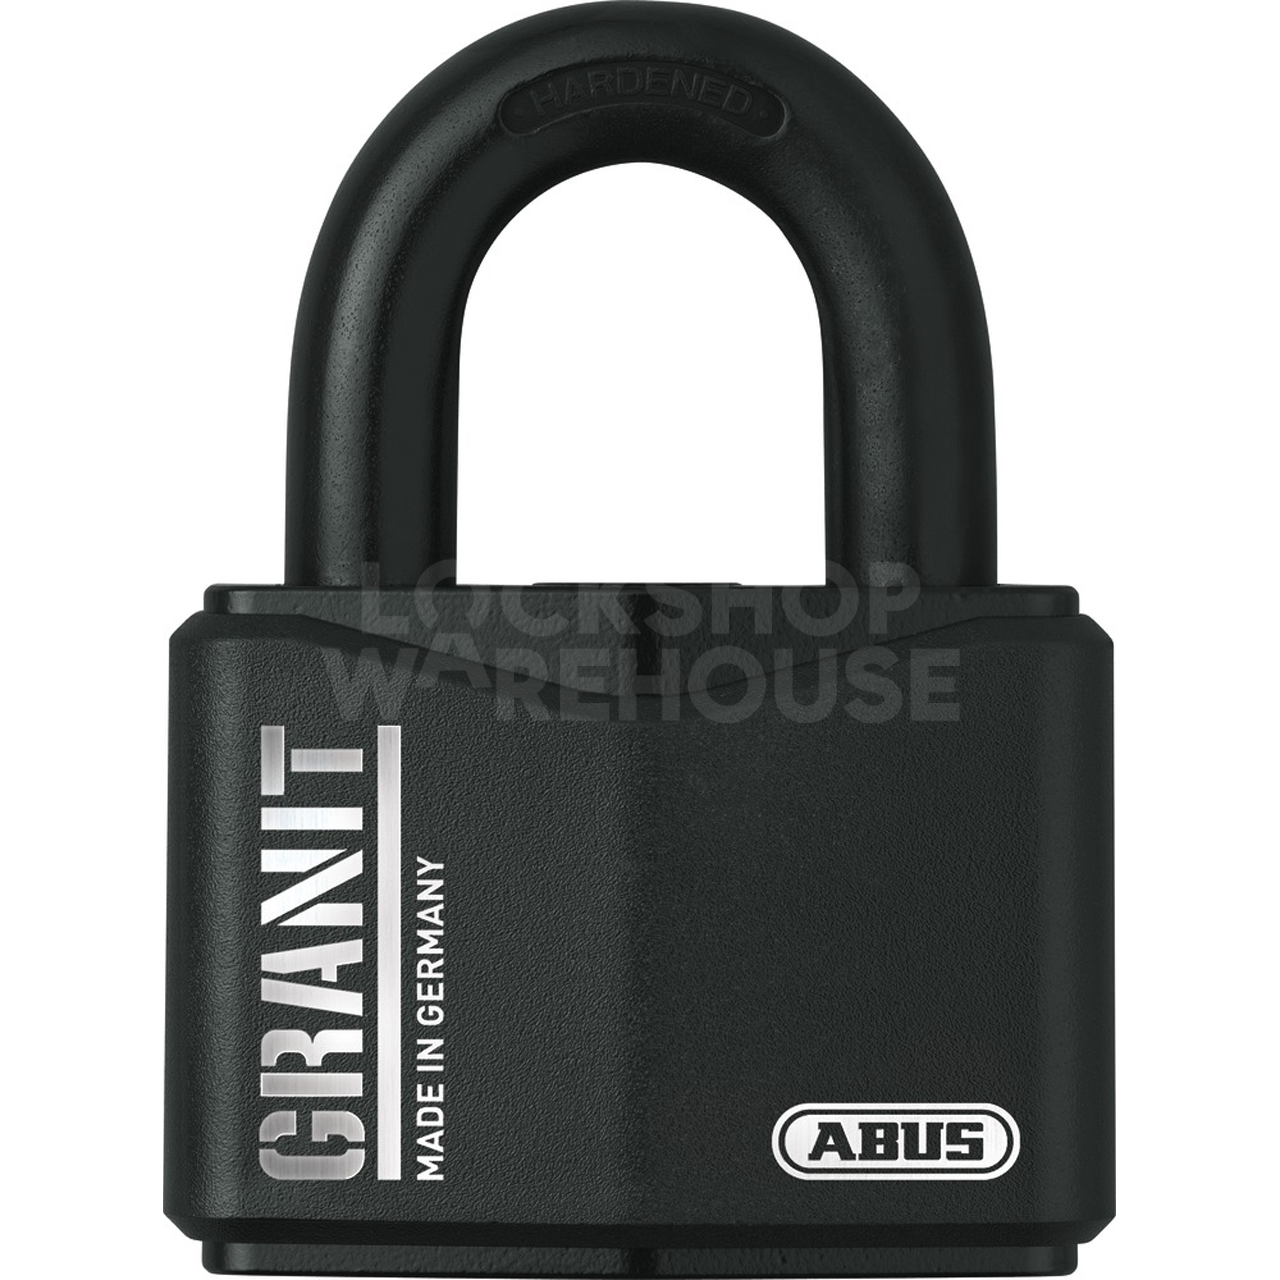 ABUS Granit 37RK/70 Open Shackle Padlock